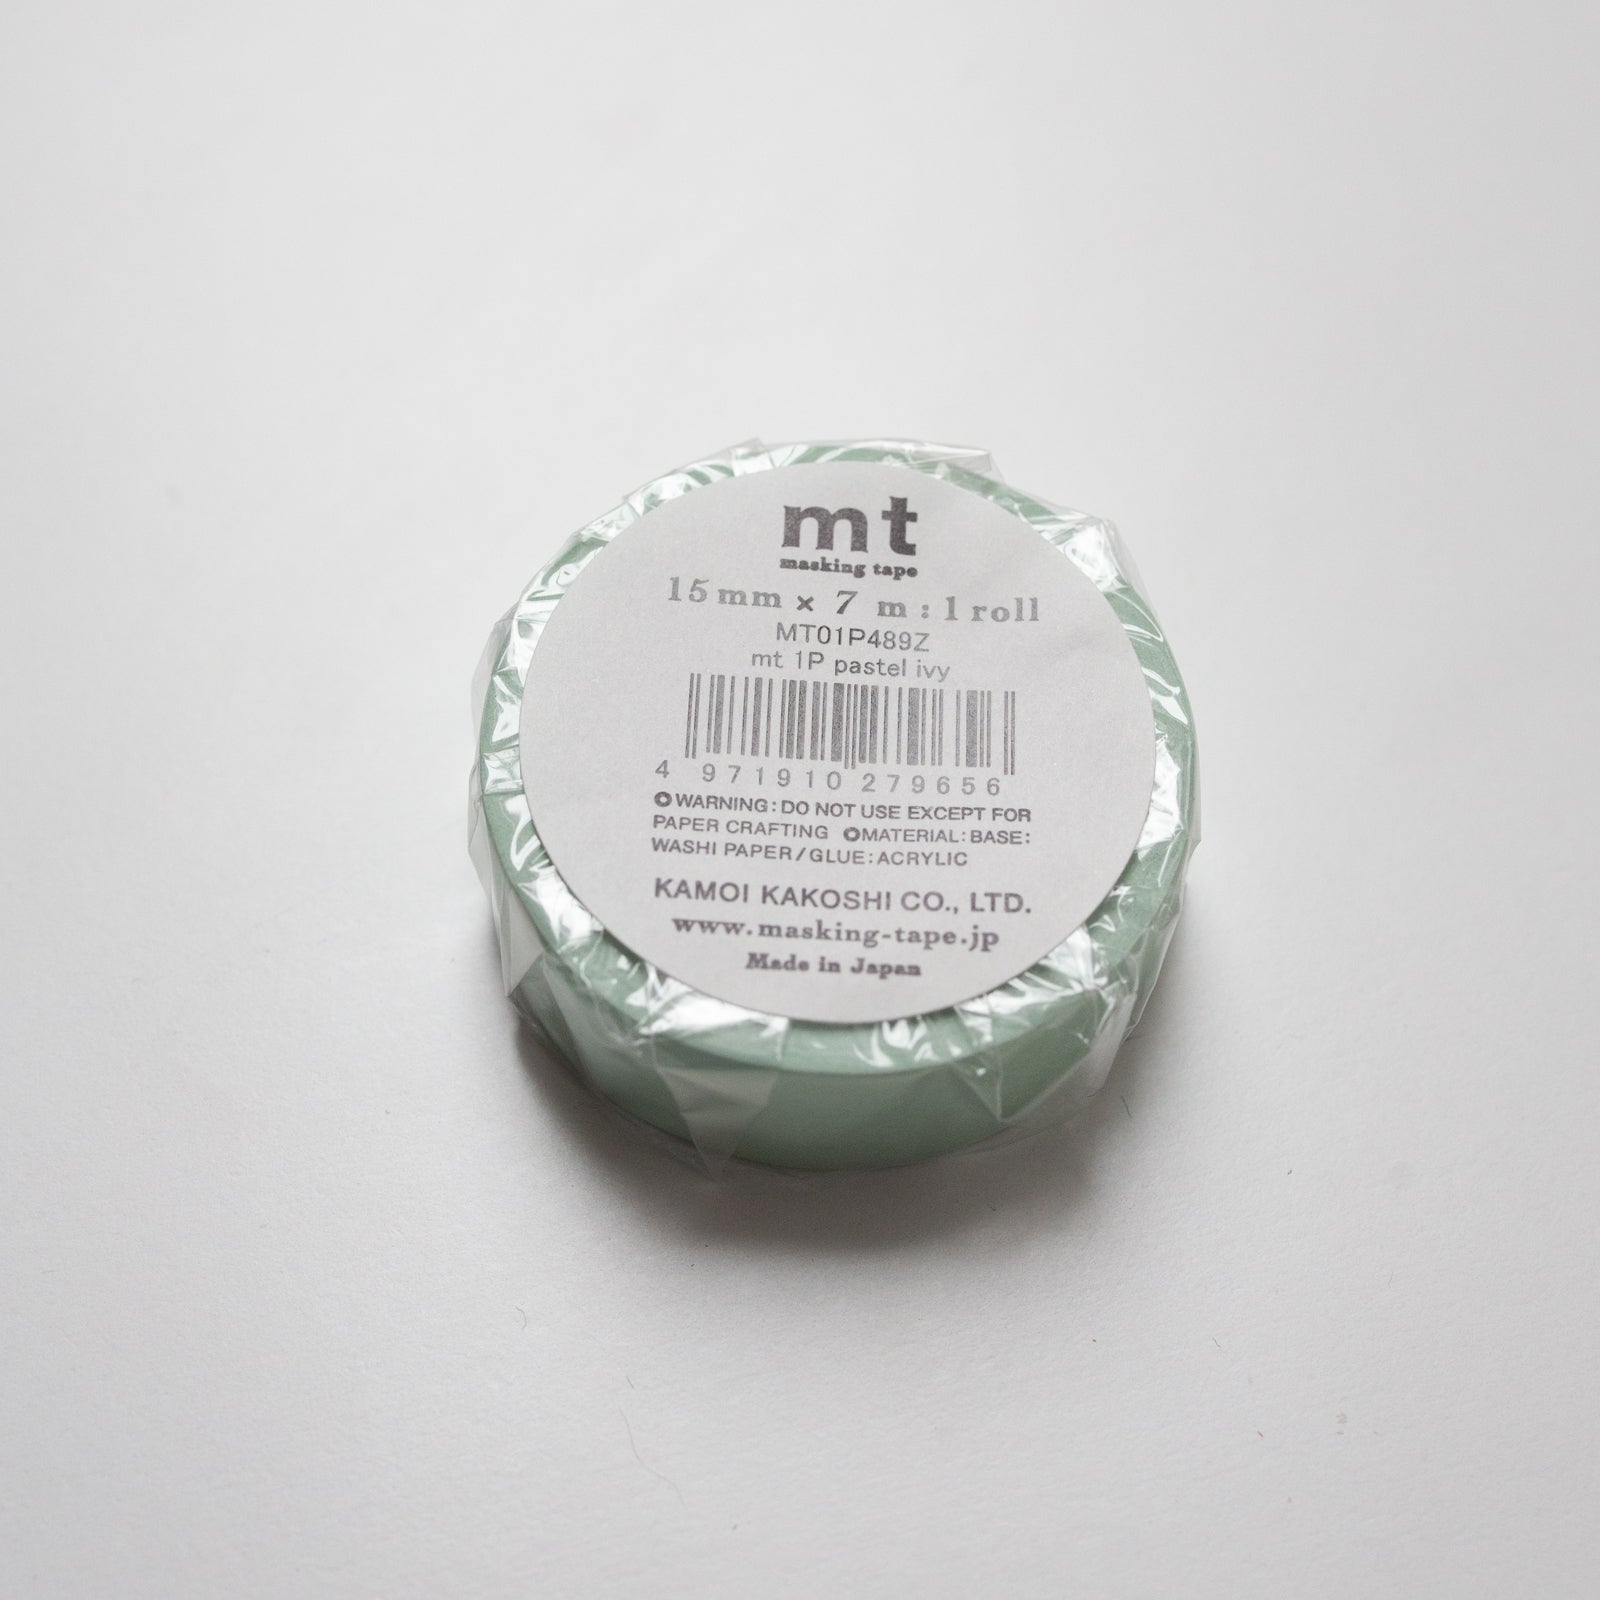 MT Masking tape Pastel Ivy